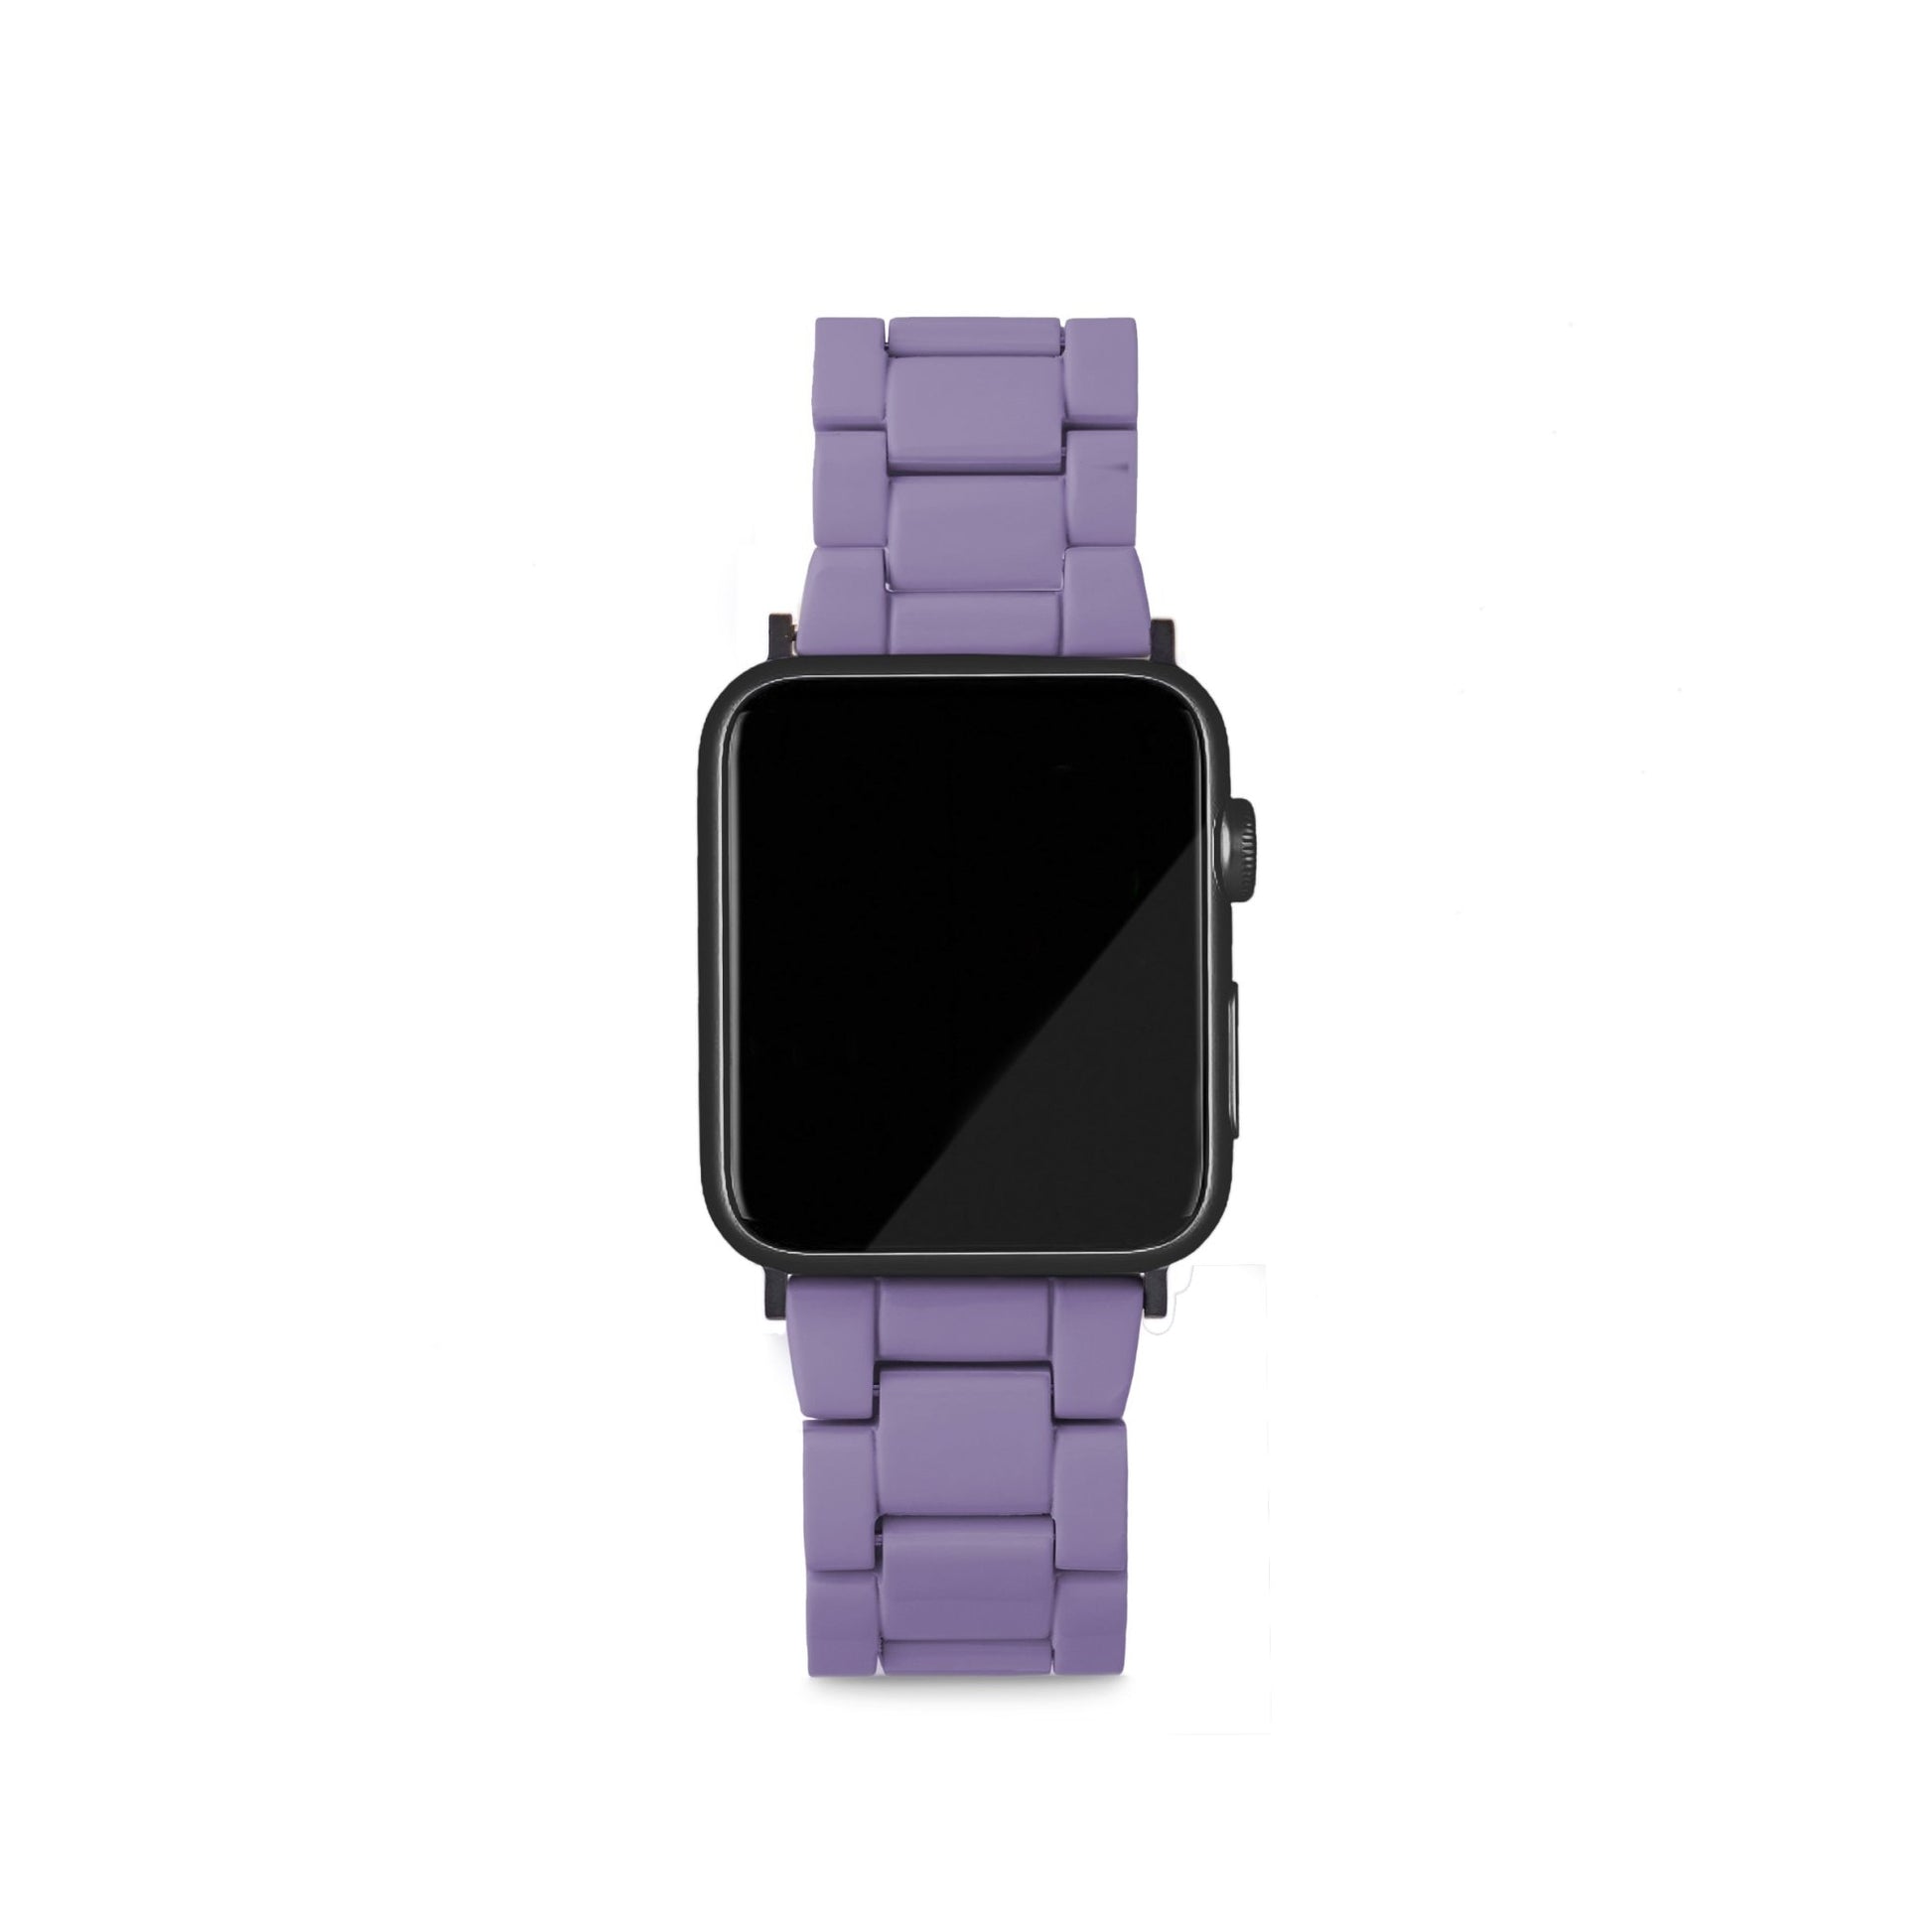 MACHETE Apple Watch Band in Violet